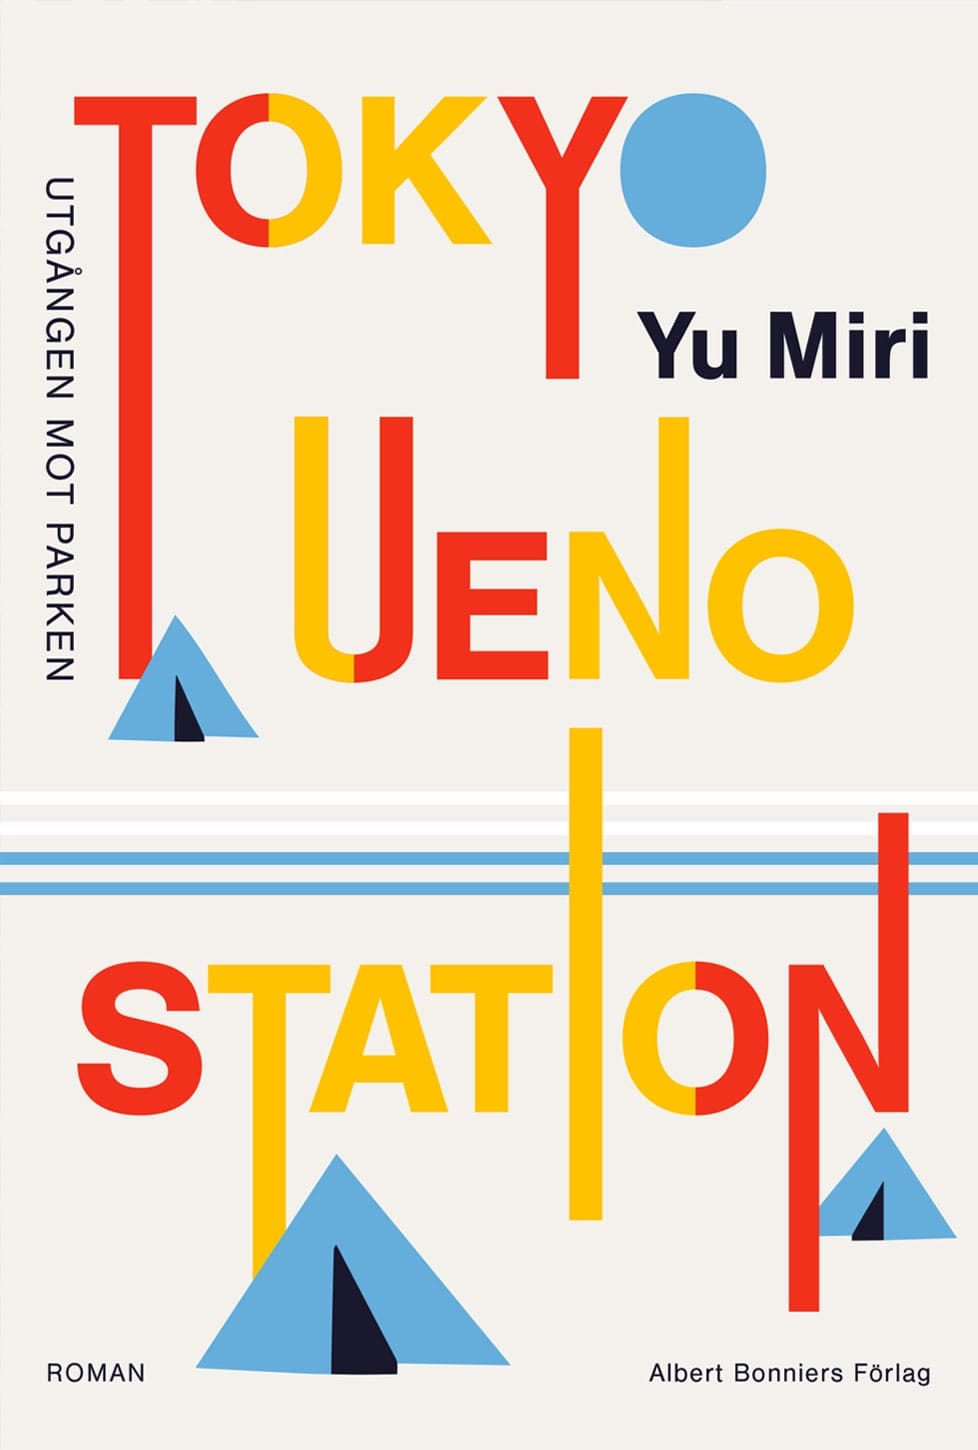 Tokyo-Ueno-Station-Yu-Miri_Heike-Schussler-min